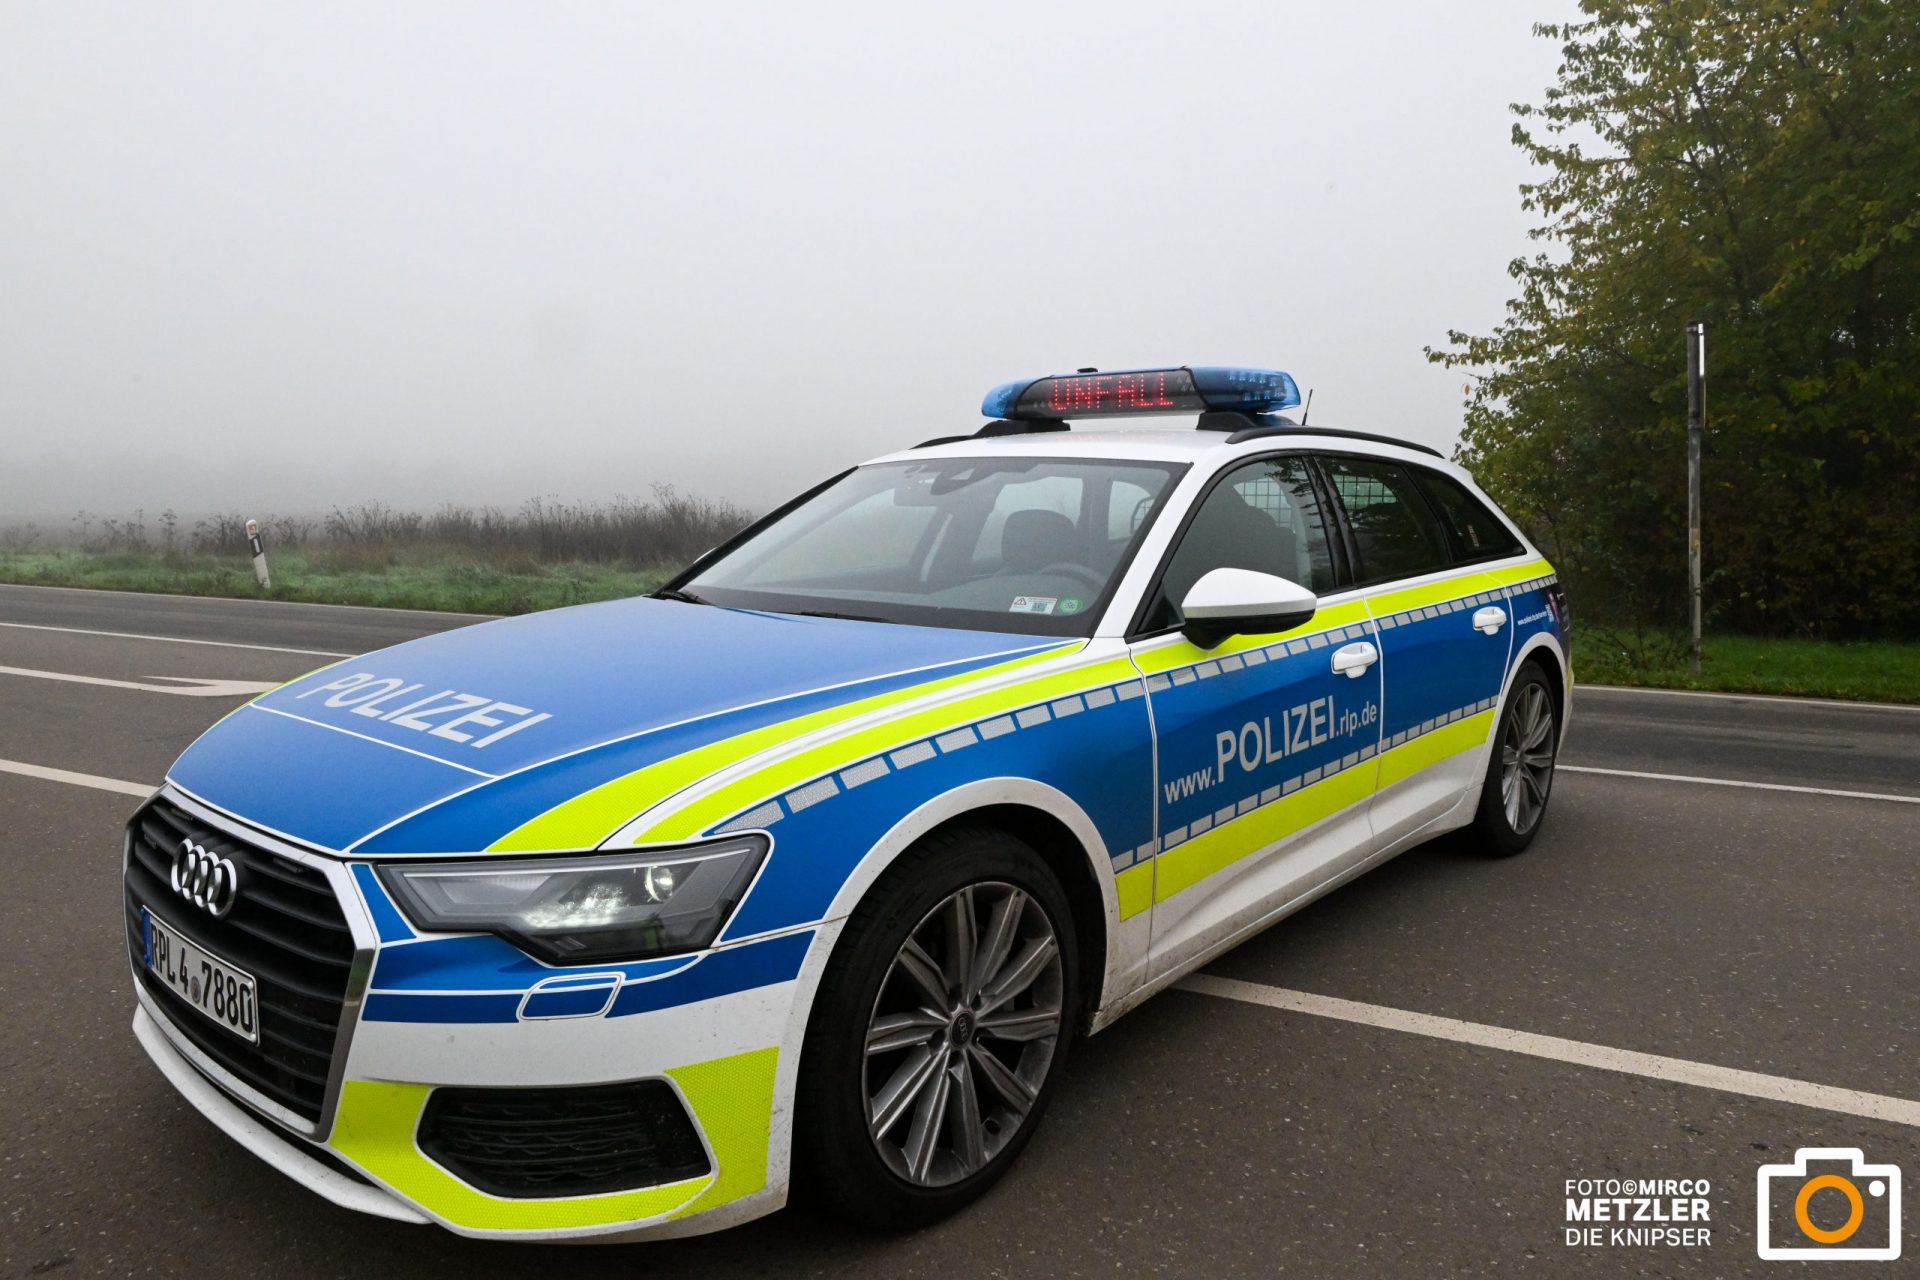 Zeugenaufruf nach einer Nötigung im Straßenverkehr, A60 in Fahrtrichtung Darmstadt.